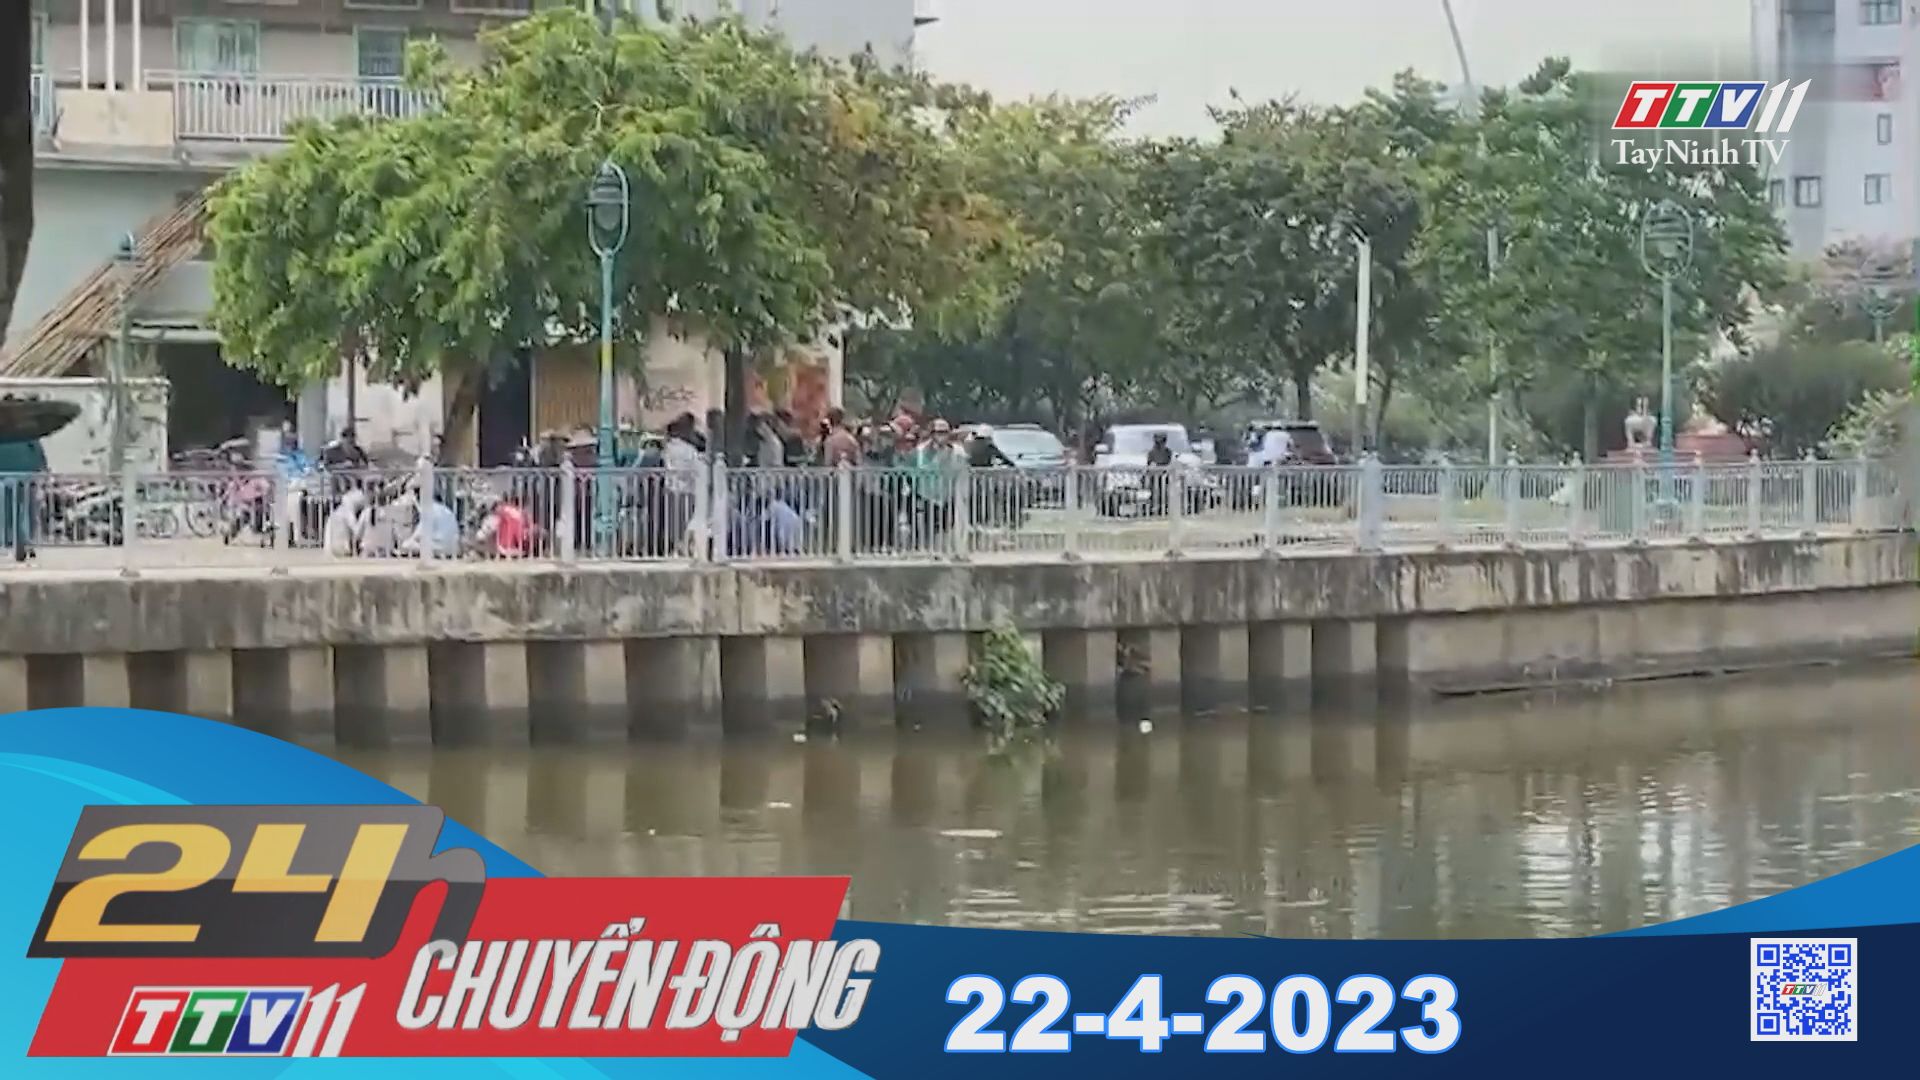 24H Chuyển động 22-4-2023 | Tin tức hôm nay | TayNinhTV